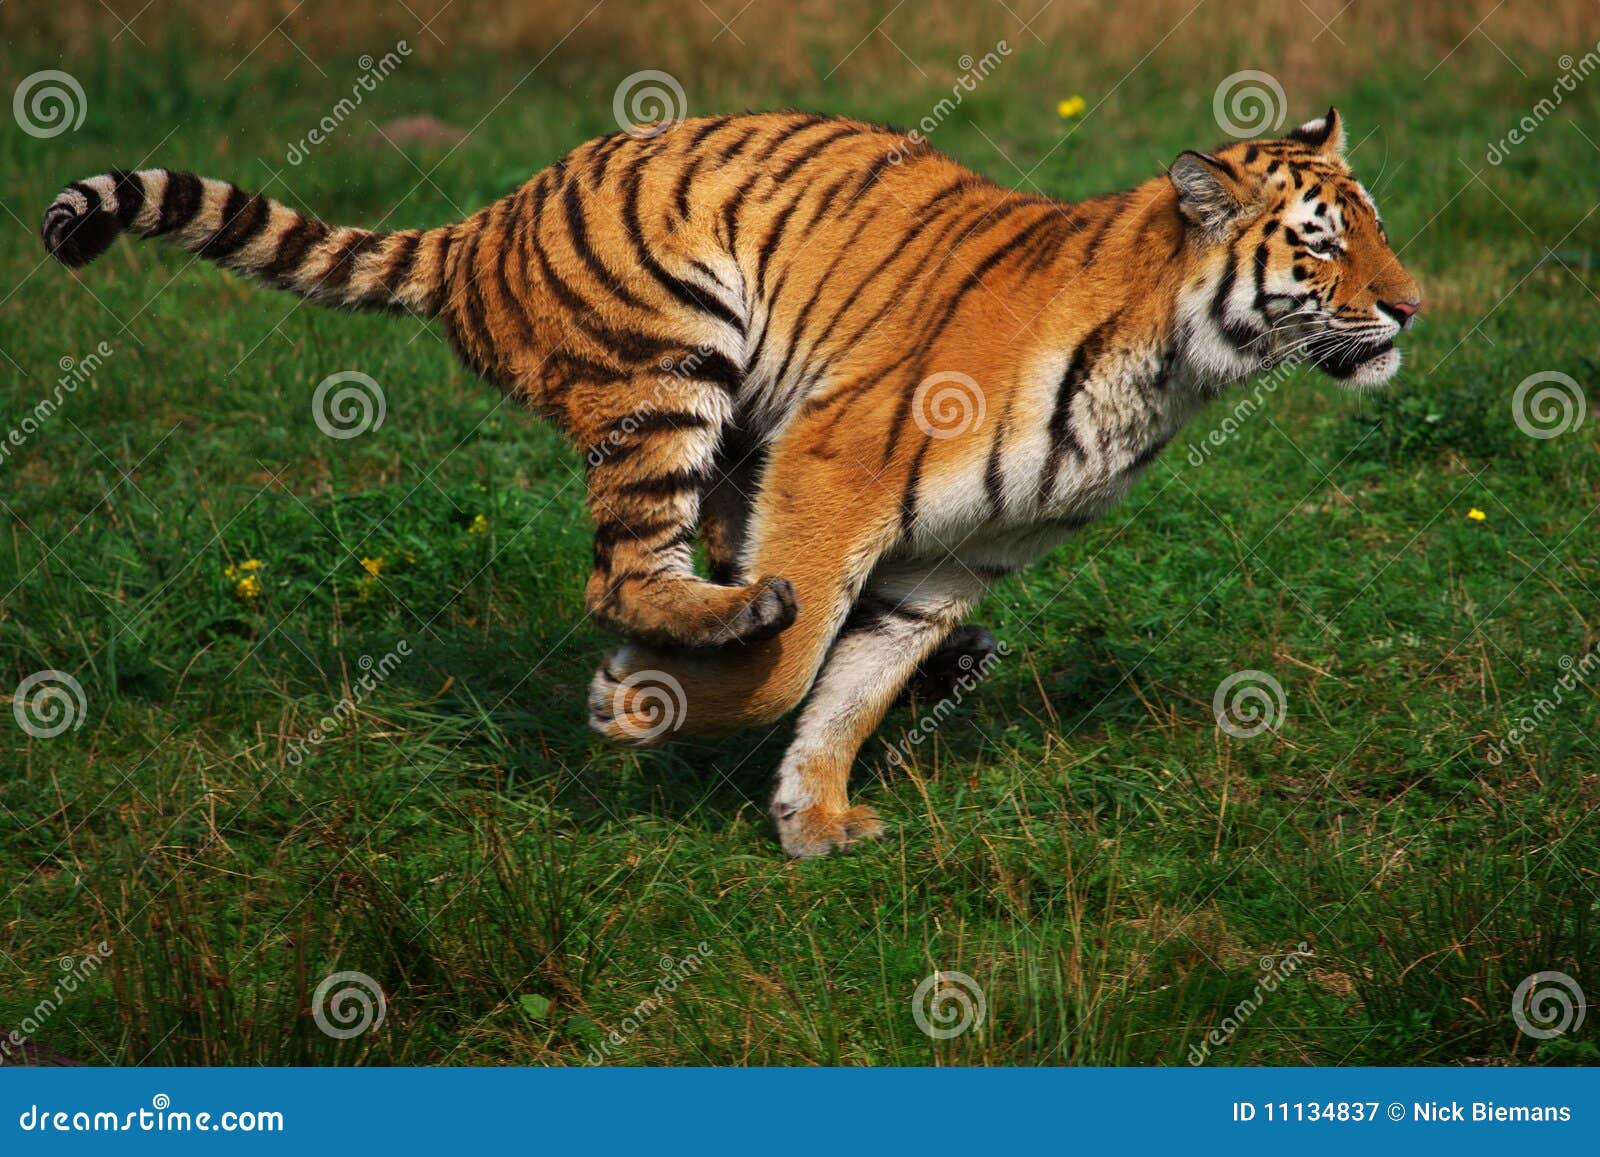 siberian tiger running